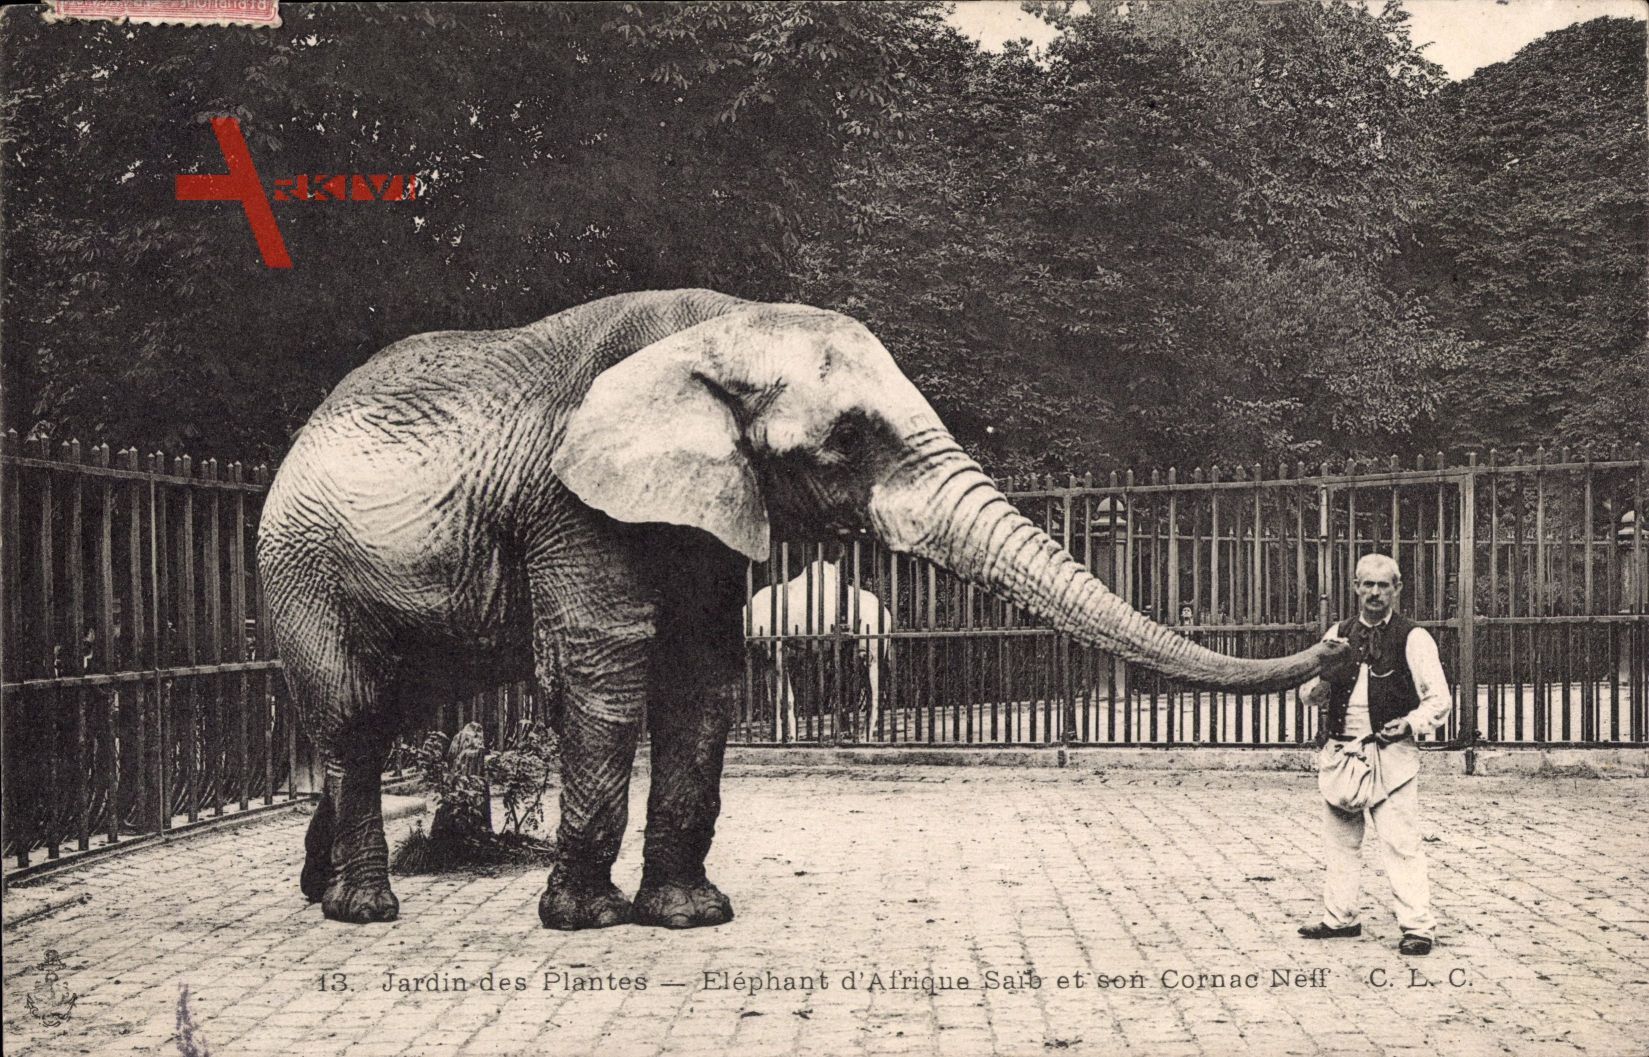 Jardin des Plantes, Eléphant d'Afrique Saib et son Cornac Neff, Elefant